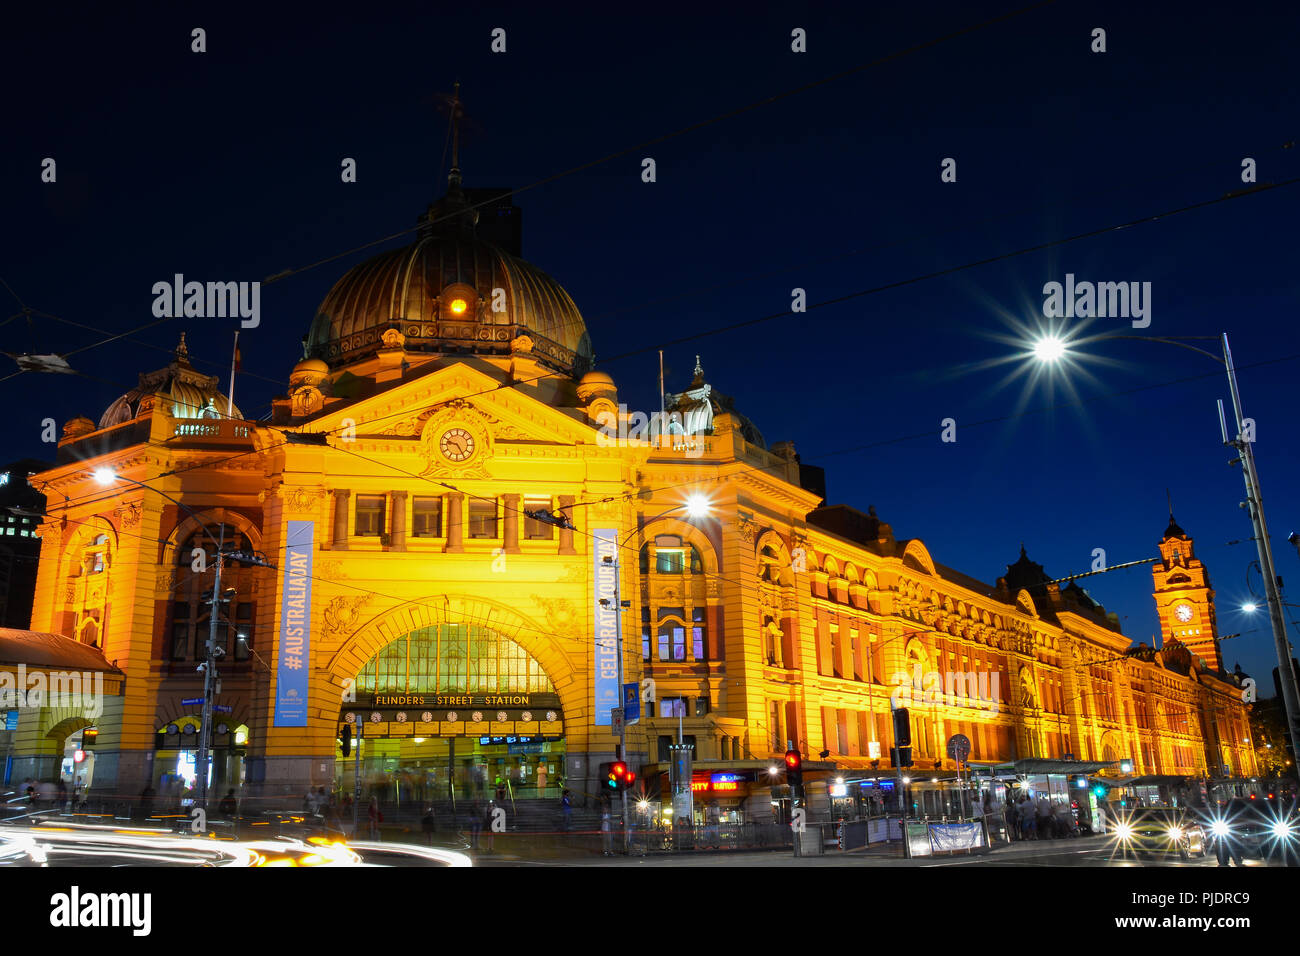 La estación de Flinders Street en la noche, el monumento más famoso de Melbourne Foto de stock